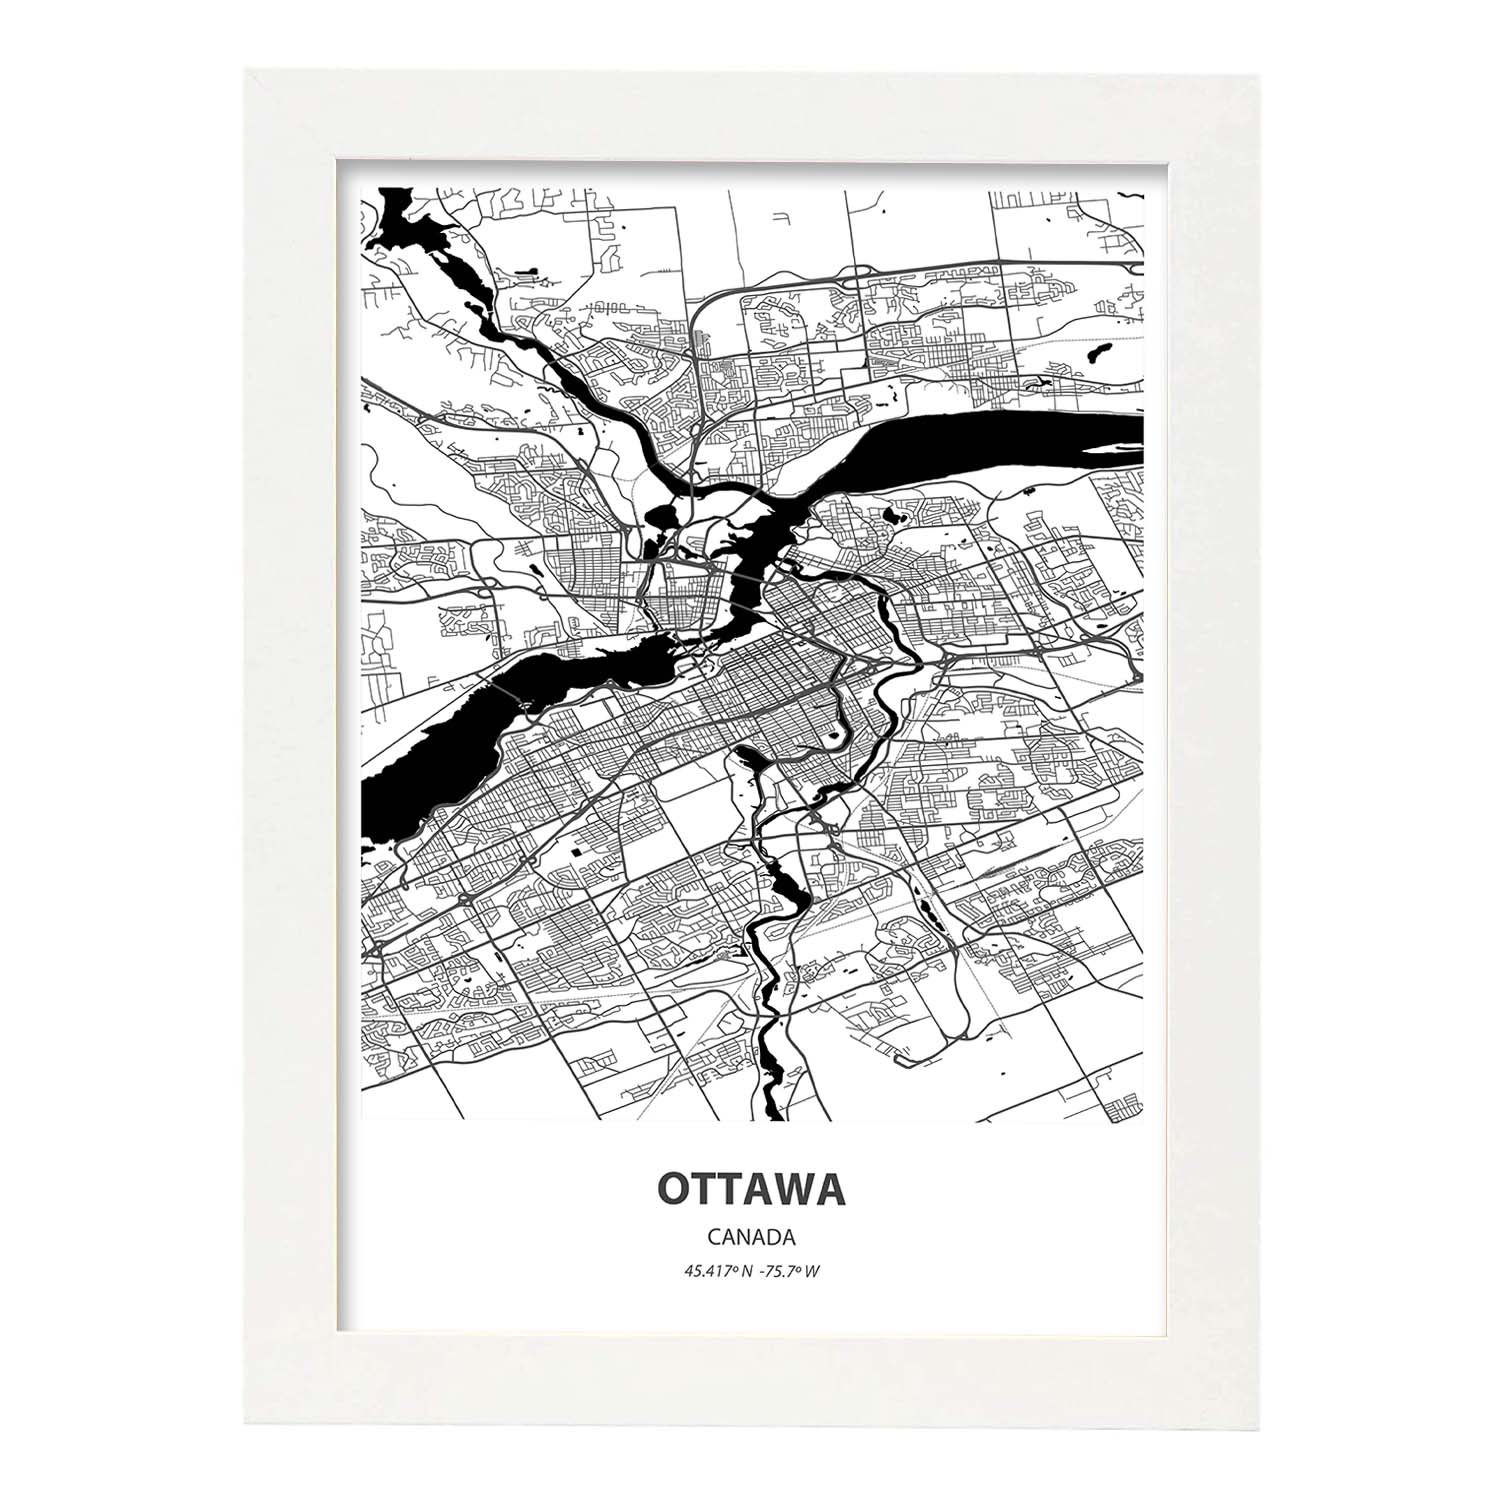 Poster con mapa de Ottawa - Canada. Láminas de ciudades de Canada con mares y ríos en color negro.-Artwork-Nacnic-A3-Marco Blanco-Nacnic Estudio SL